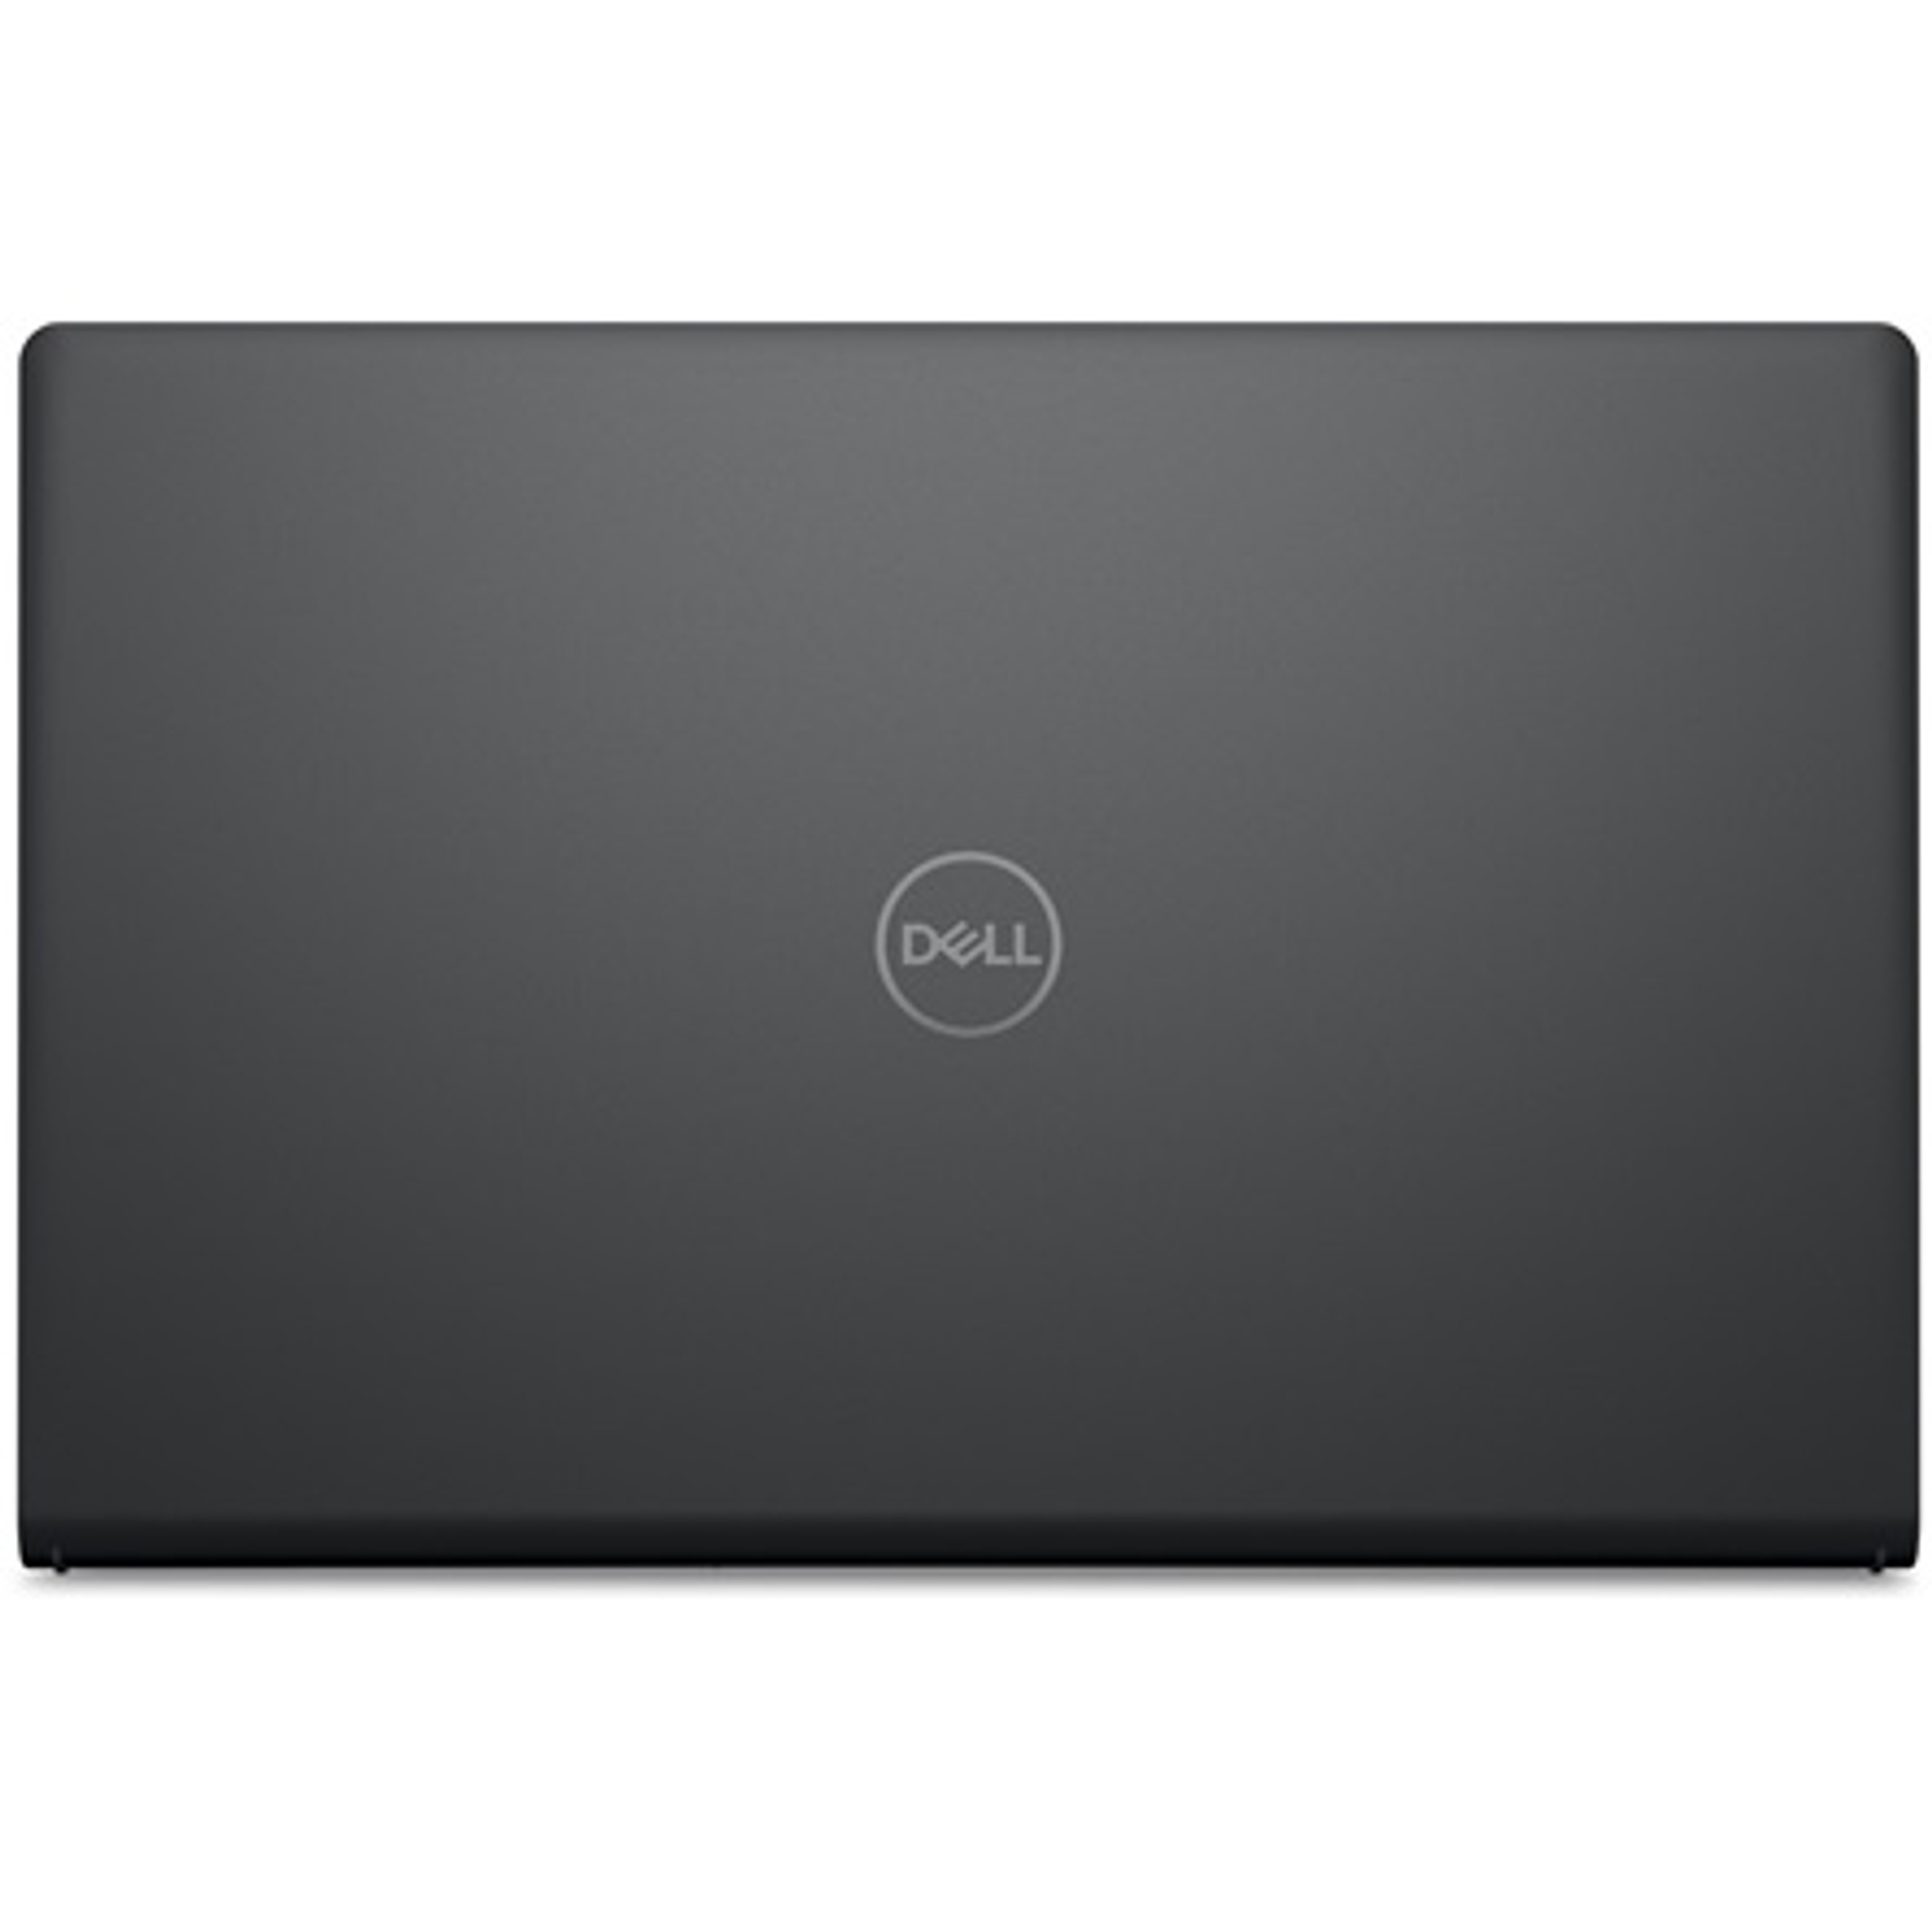 DELL V3520-7 Laptop / Notebook 5